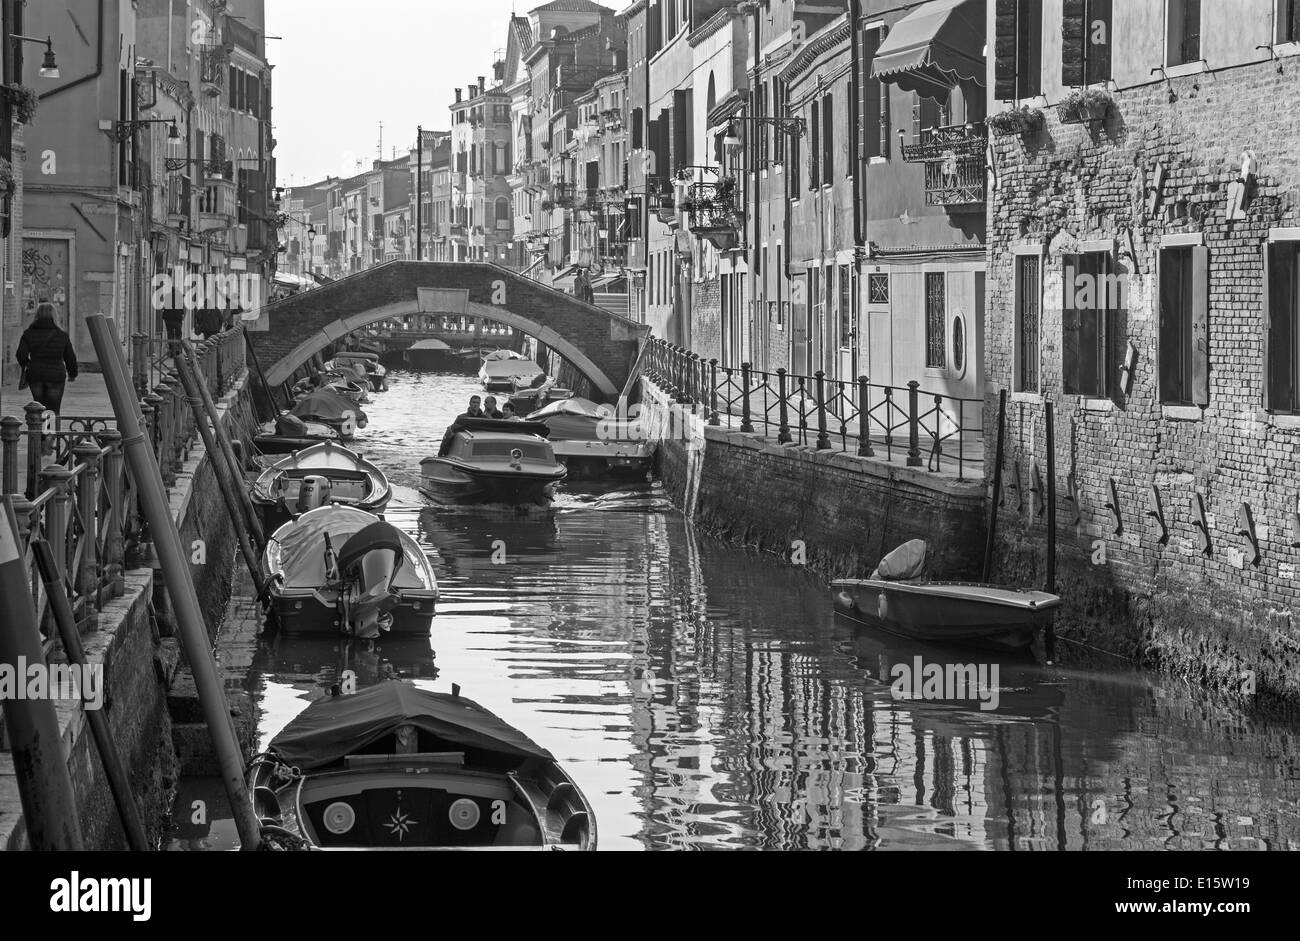 Venise, Italie - 14 mars 2014 : Fundamenta et canal Rio di Santa Anna en lumière du soir Banque D'Images